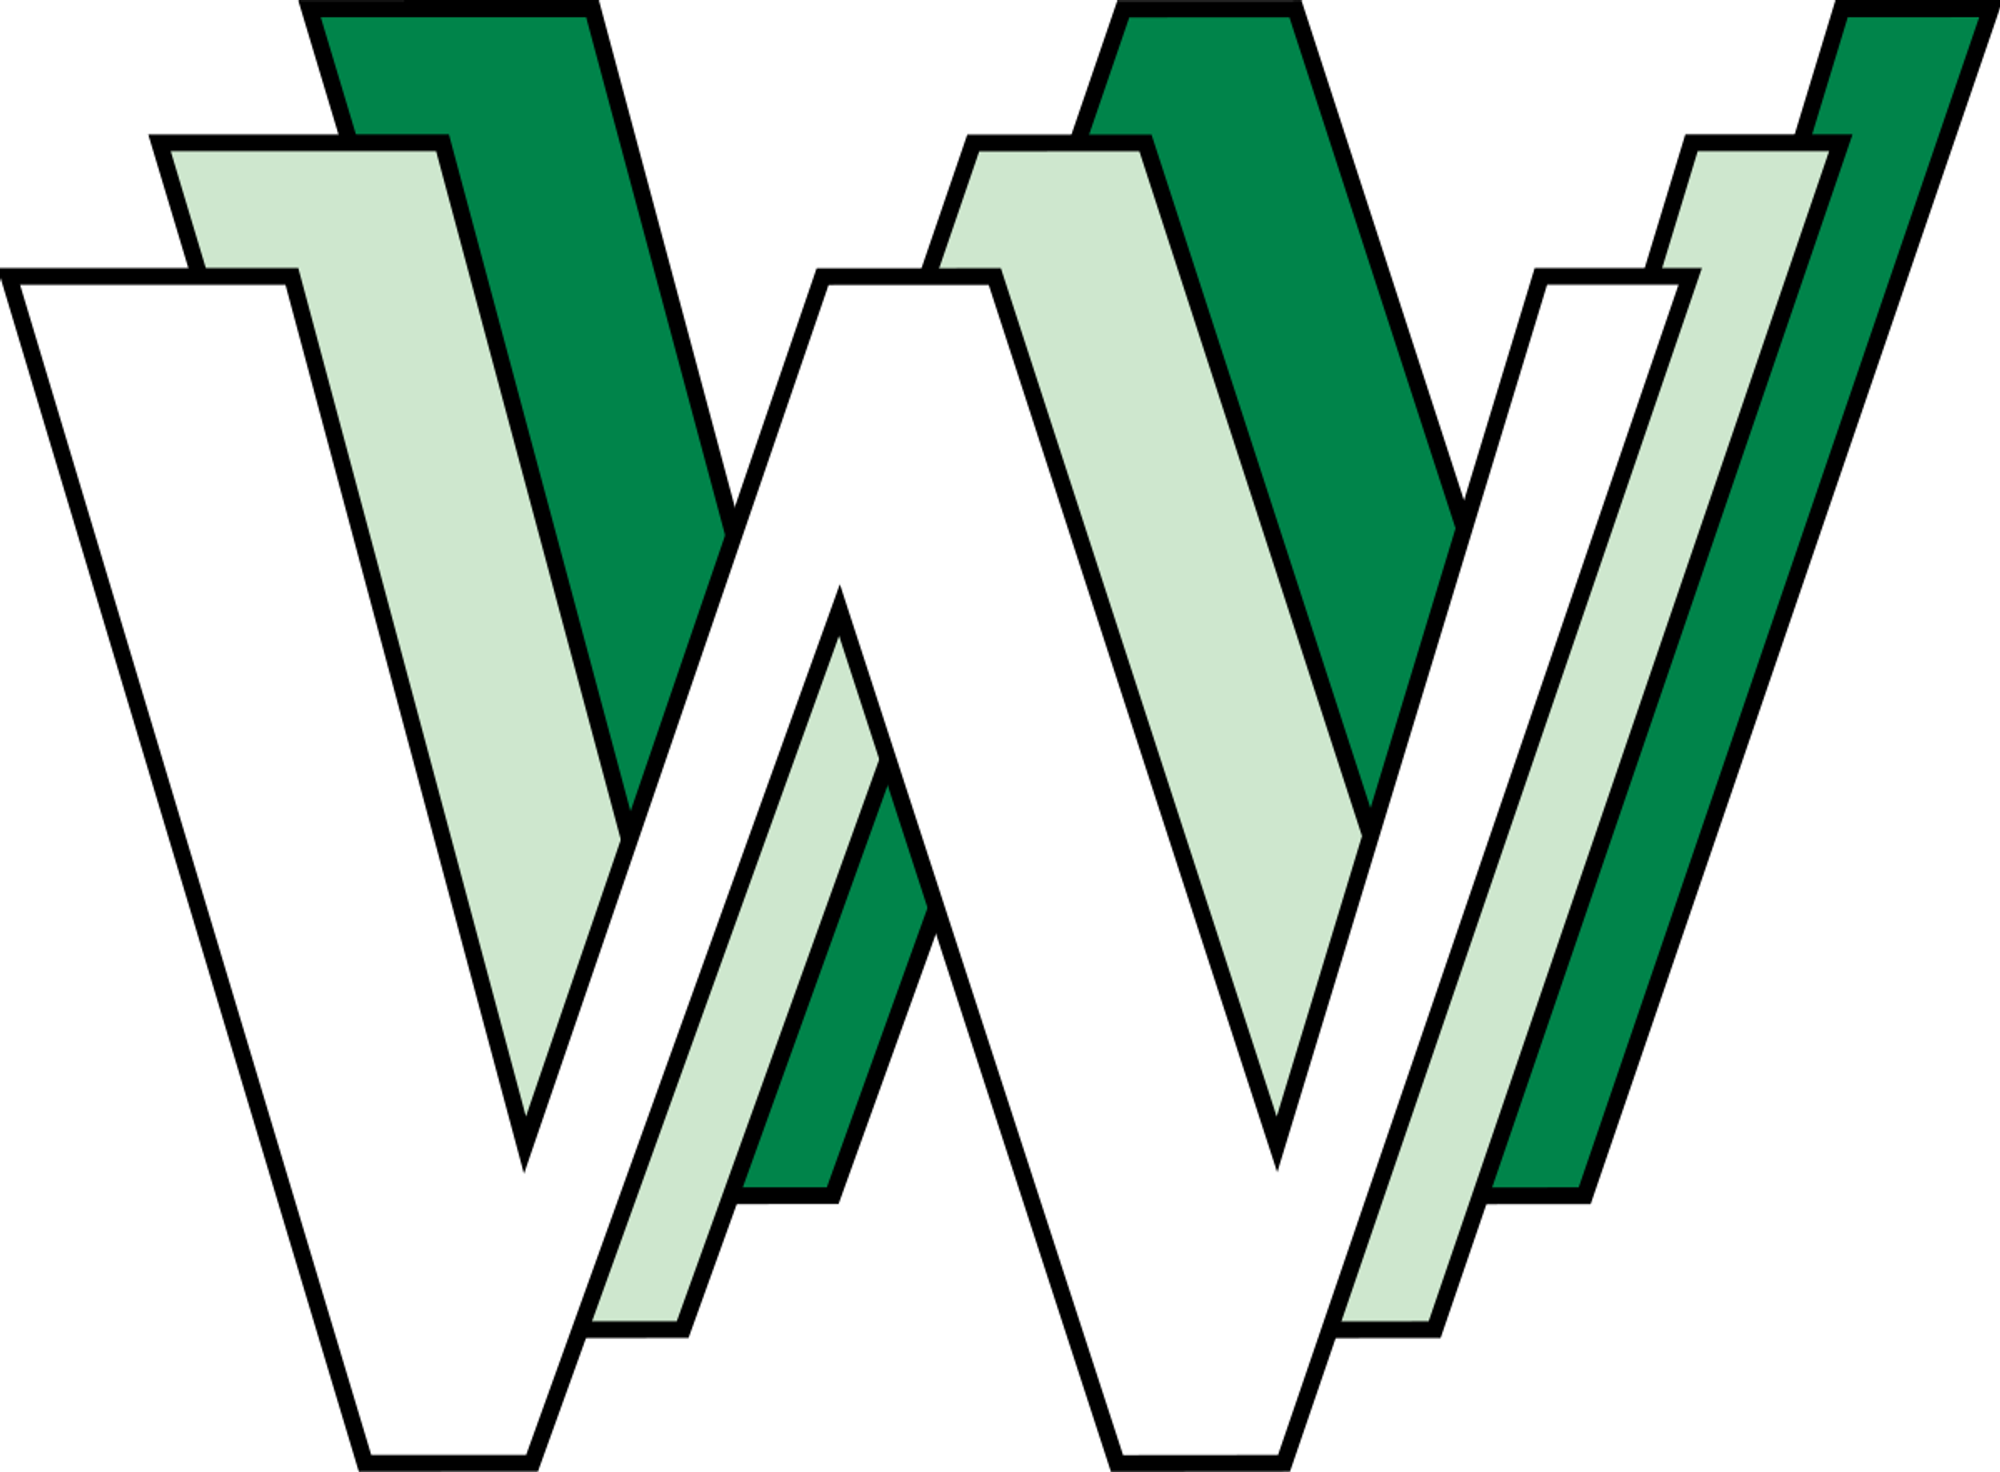 World Wide Web - Wikipedia